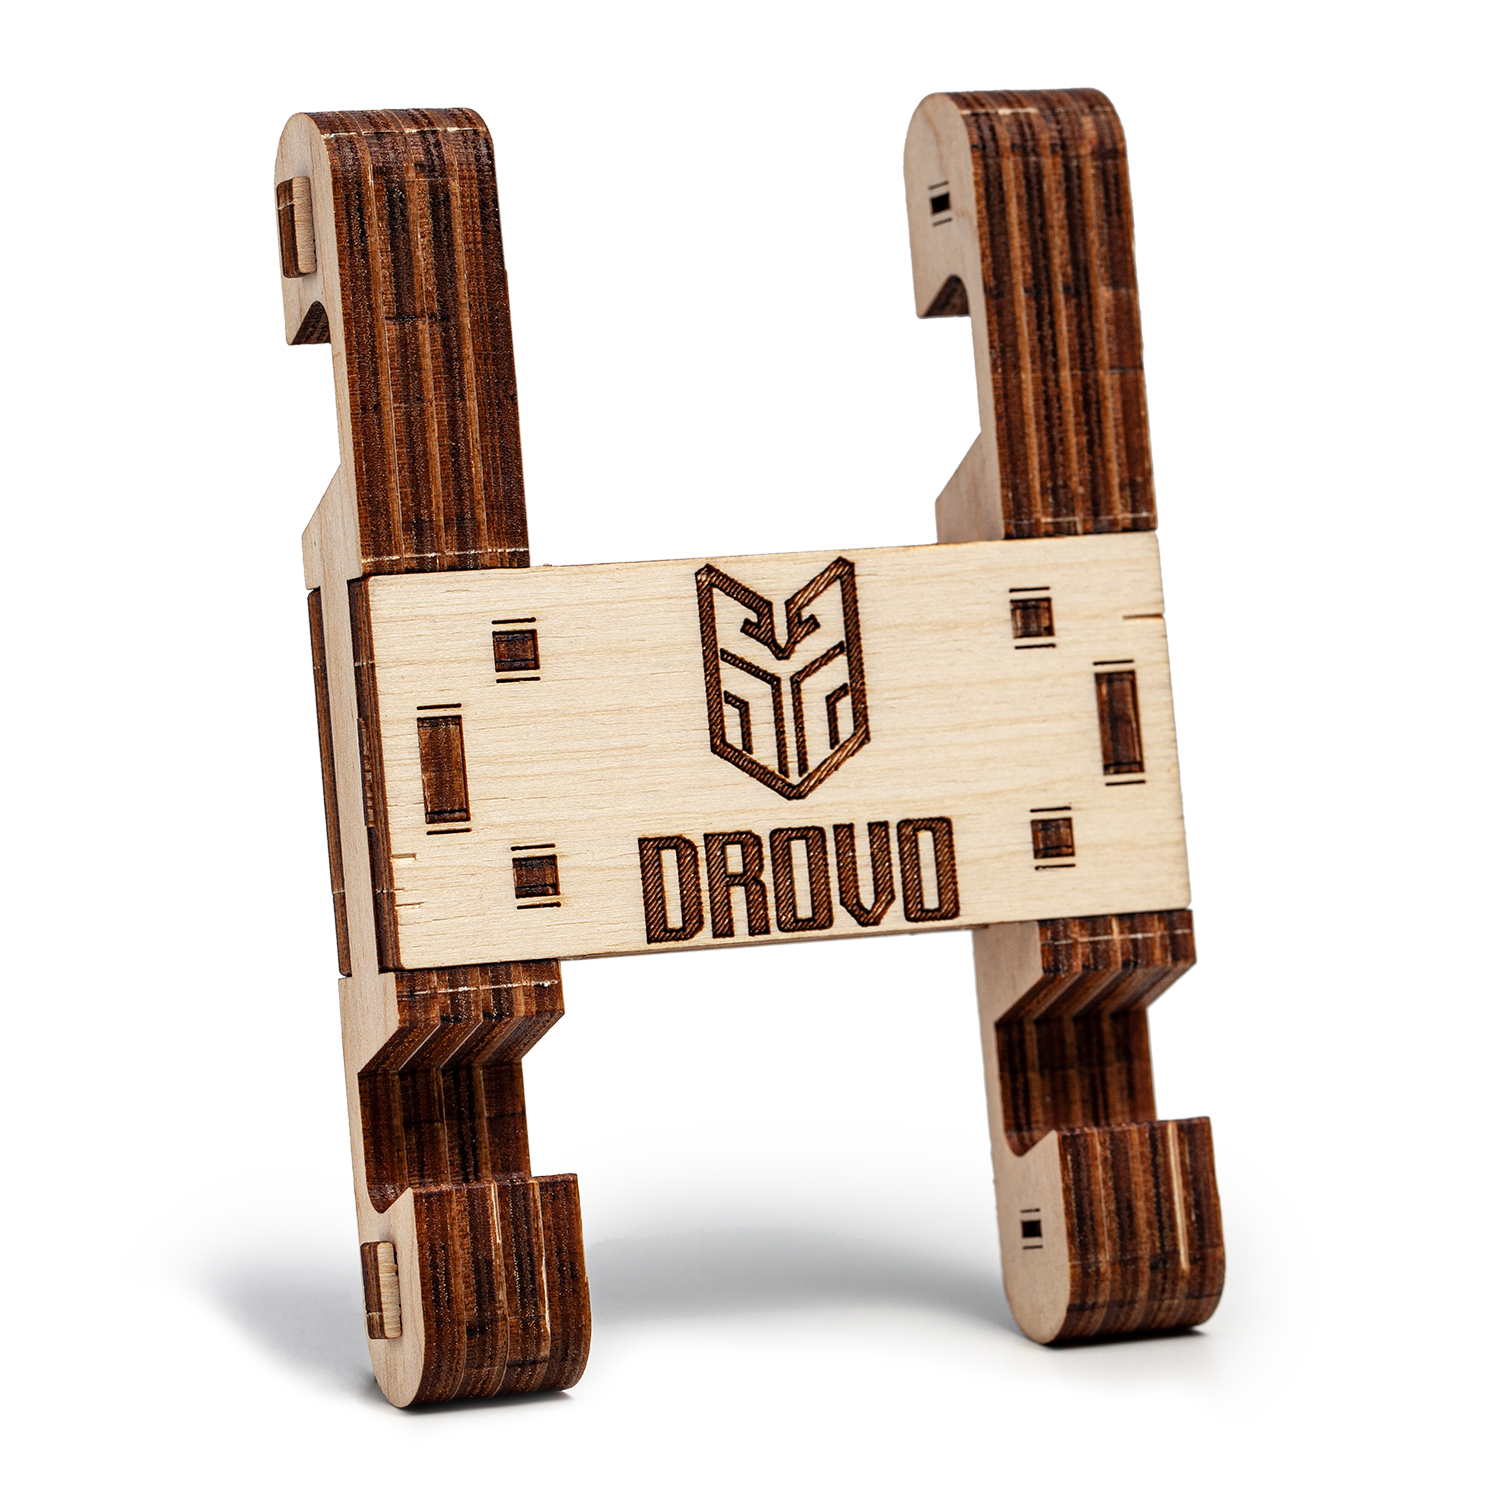 Деревянный конструктор DROVO 3D пазл Подставка под гаджет - фото 6